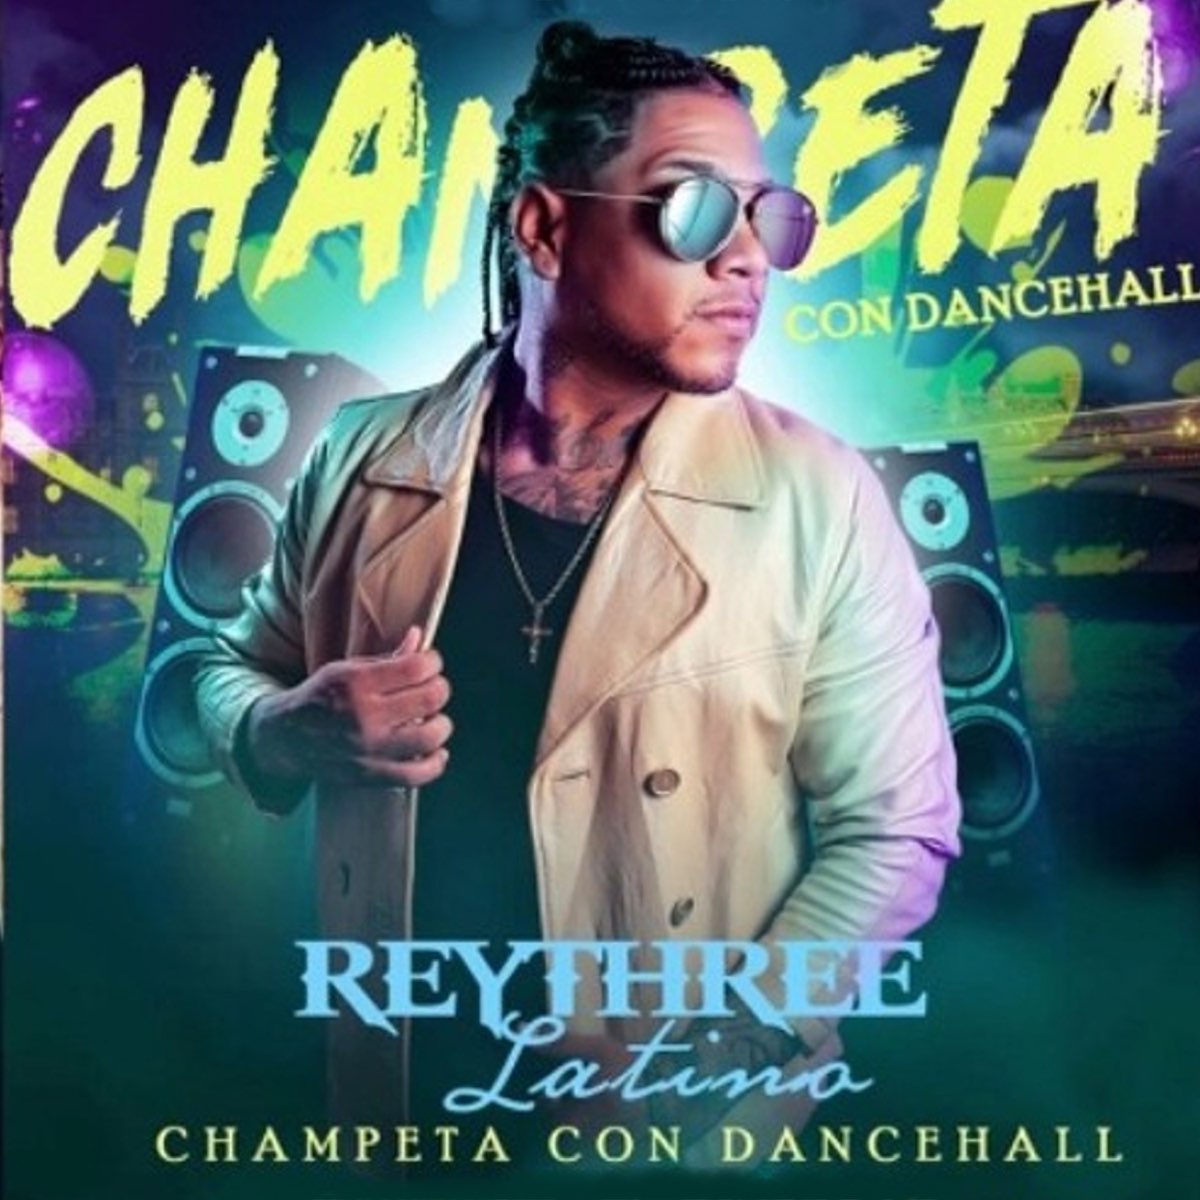 digerir Amante Confuso Champeta con Dancehall - Single de Rey Three Latino en Apple Music